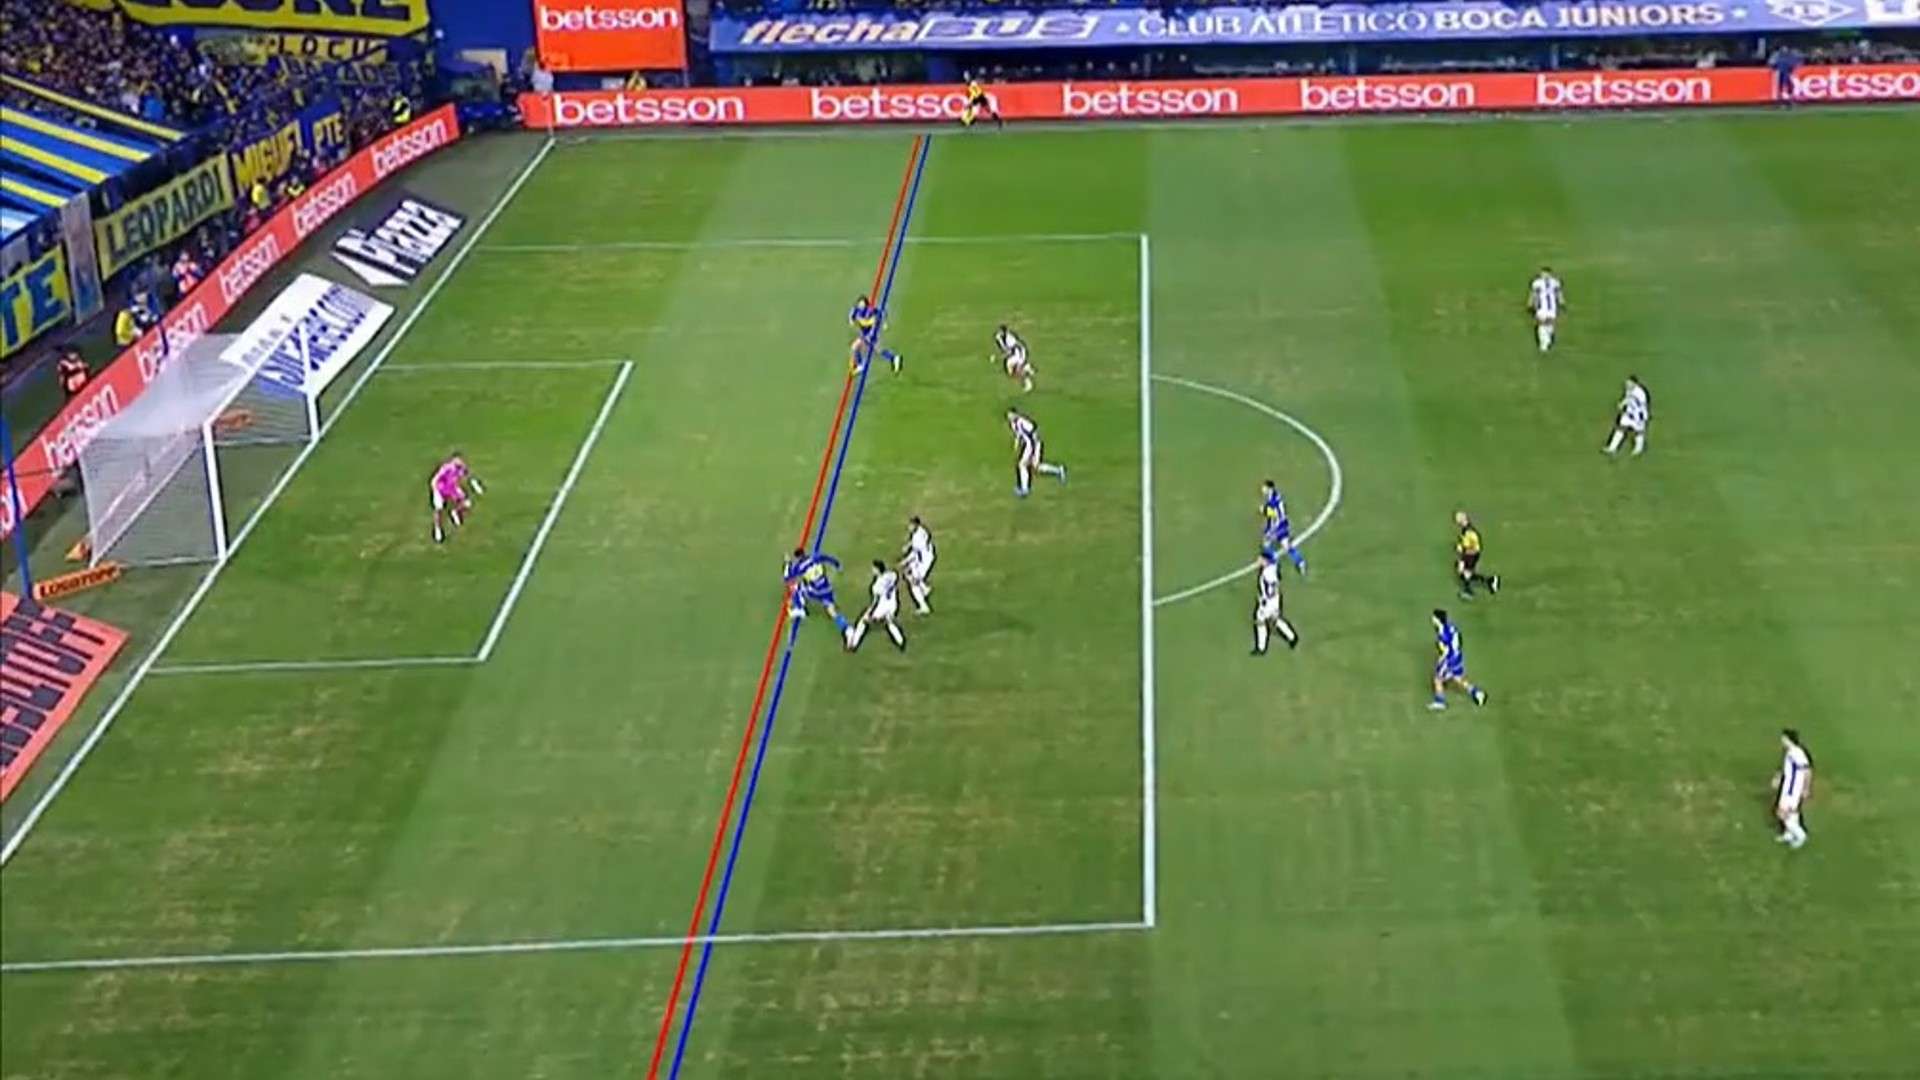 Qué dijo Diego Martínez sobre el gol anulado a Edinson Cavani en el partido  entre Boca y Talleres? | Goal.com Argentina